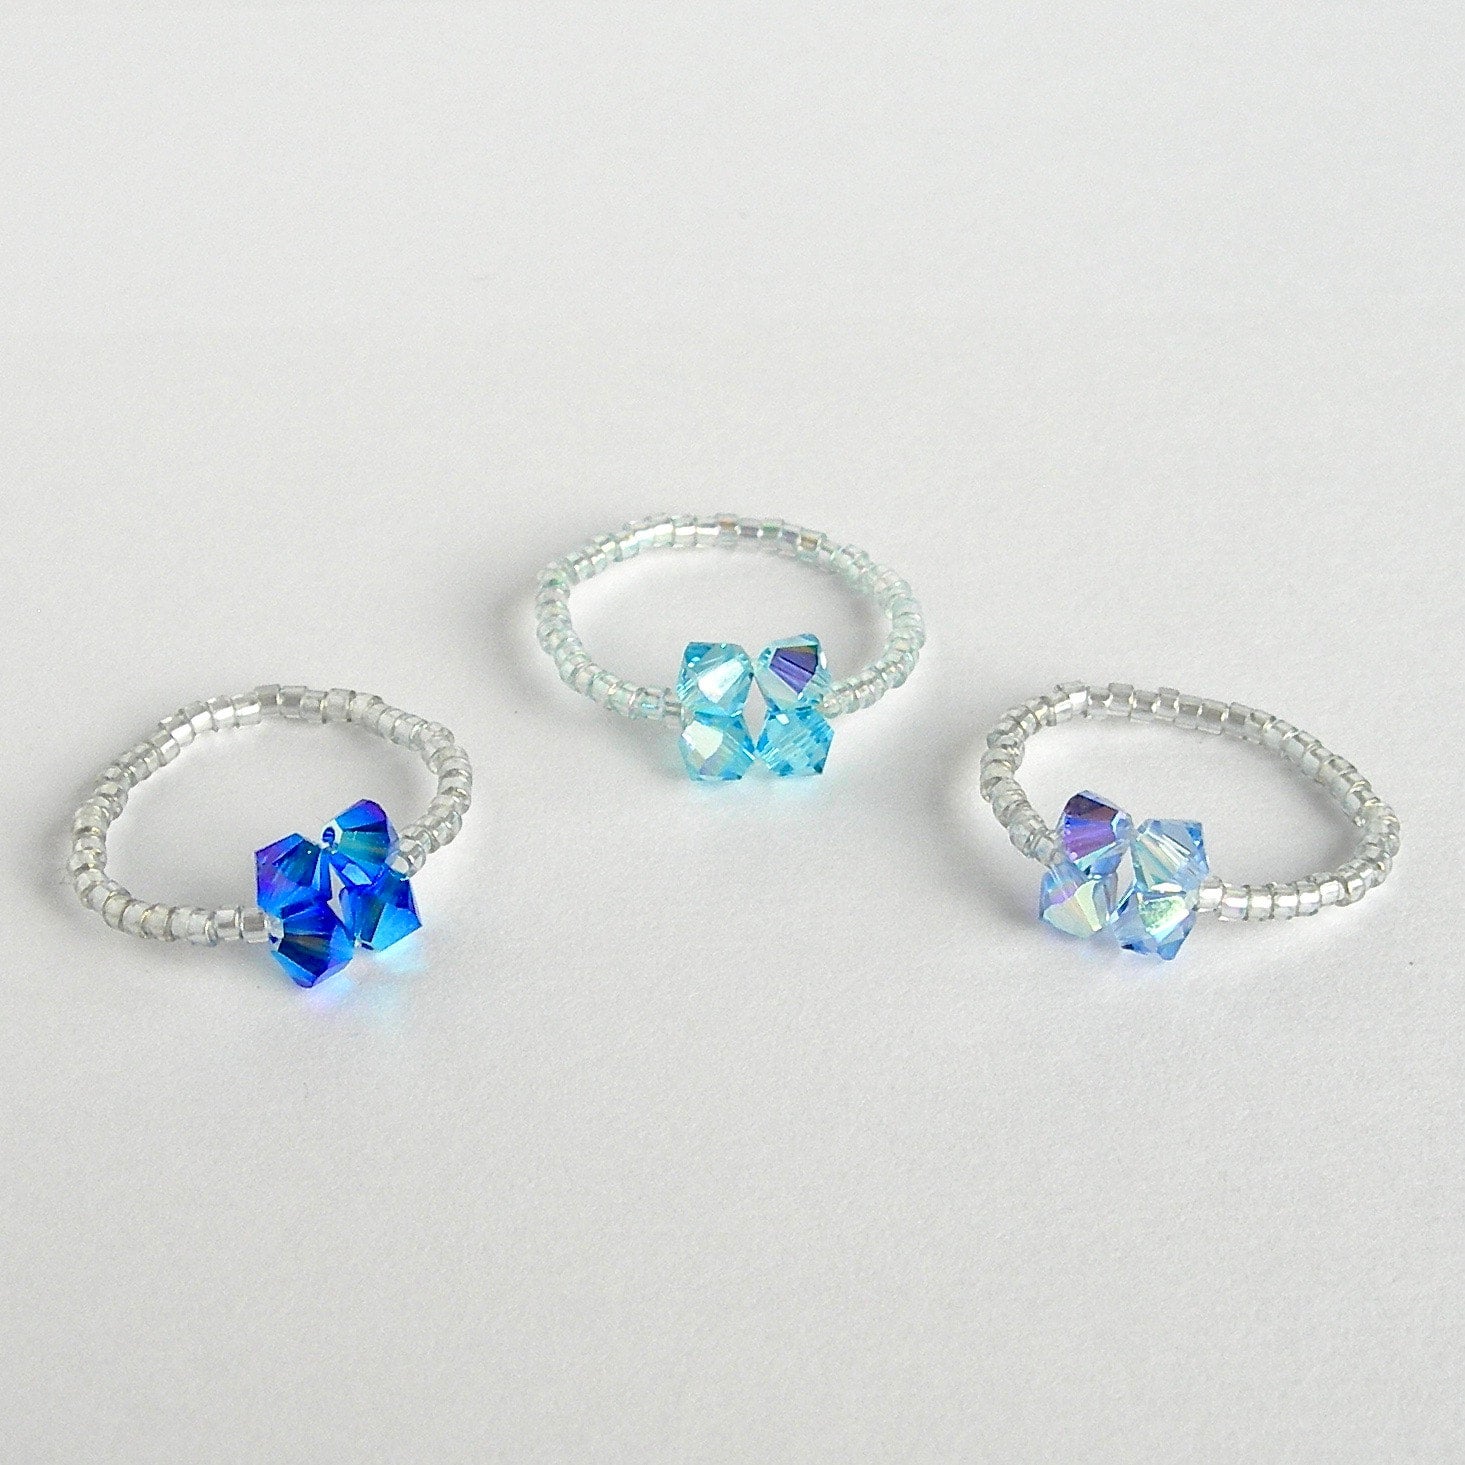 Adjustable Color Crystal Ring | Adjustable Elastic Ring Women | Elastic  Colorful Rings - Rings - Aliexpress